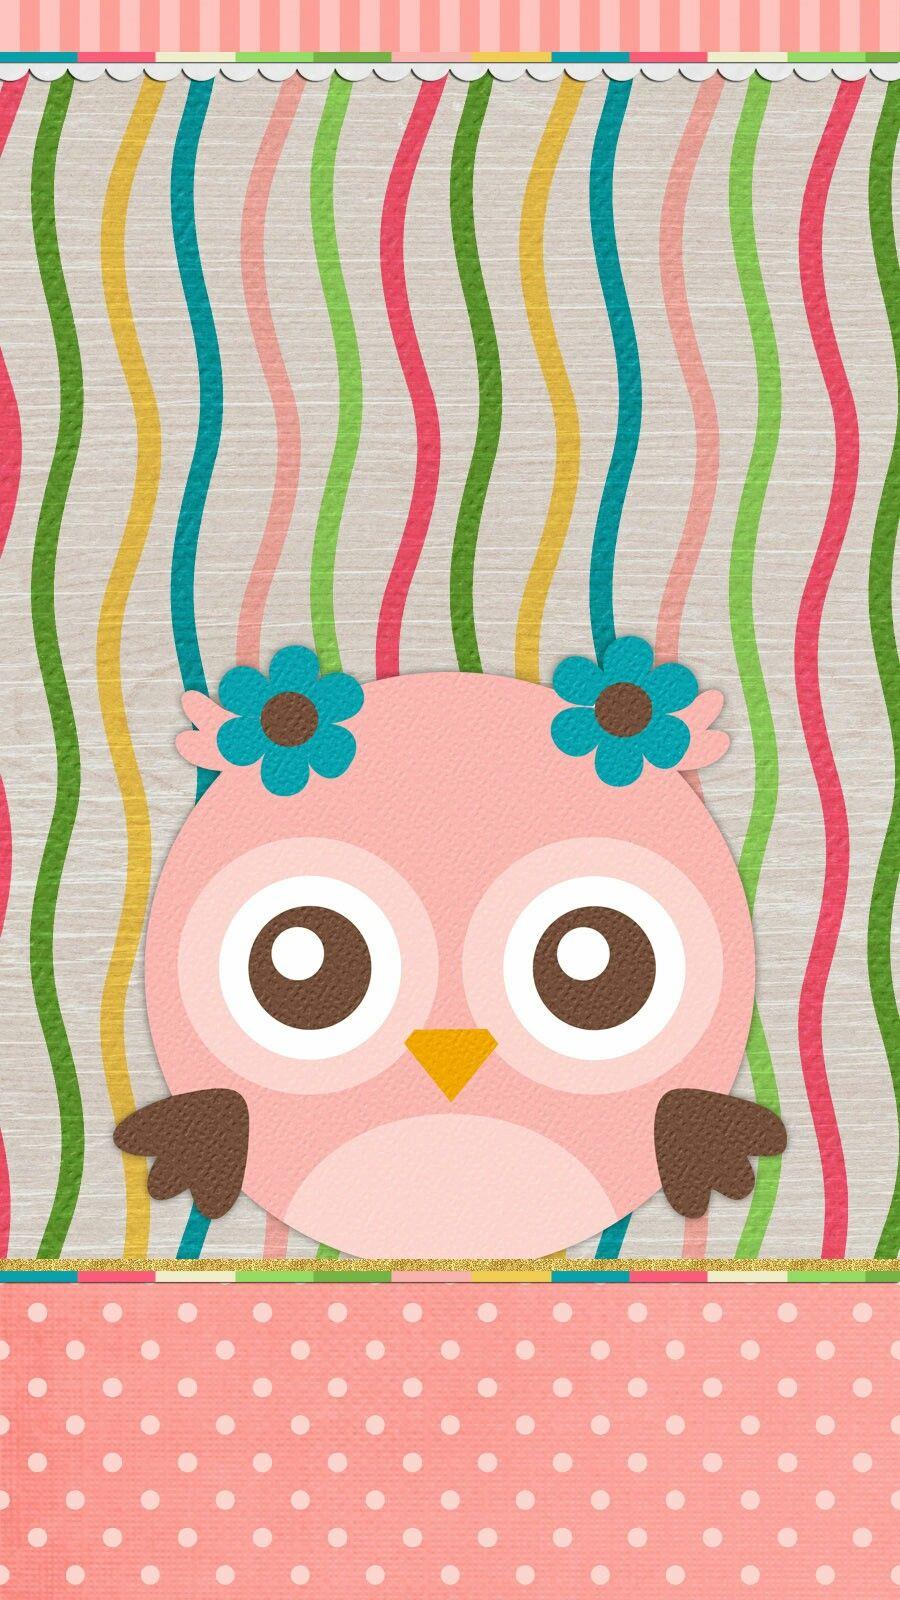 spring #owls #wallpaper #iphone. Owl wallpaper, Cute owls wallpaper, Owl cartoon